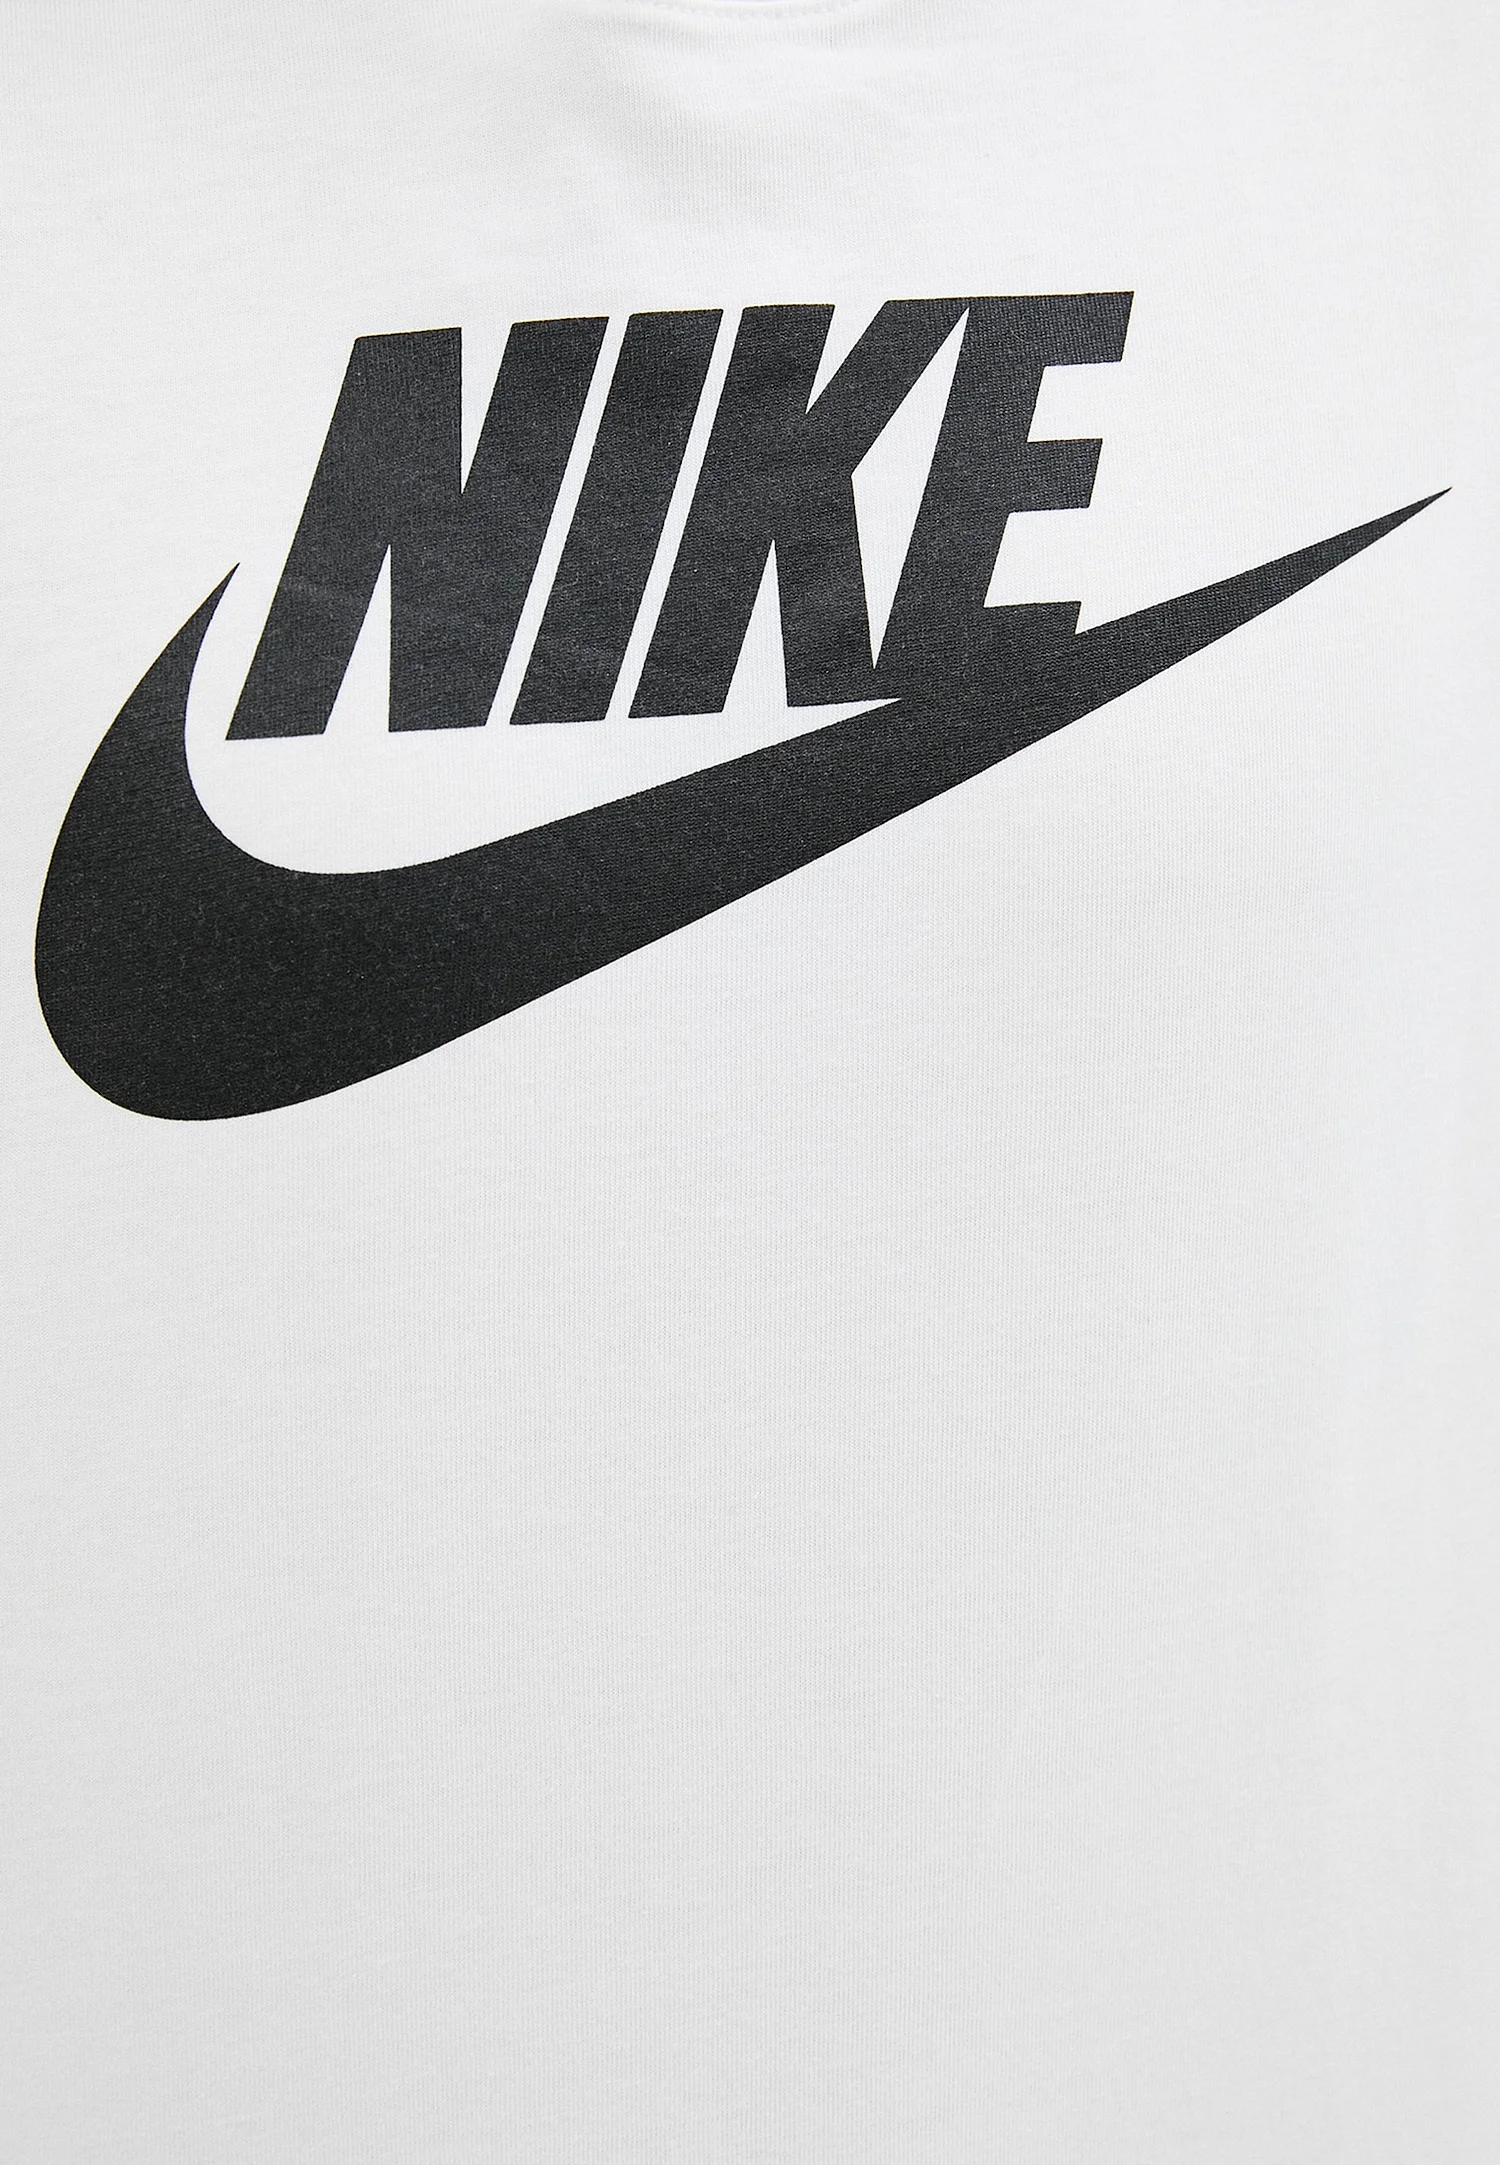 Nike Air логотип